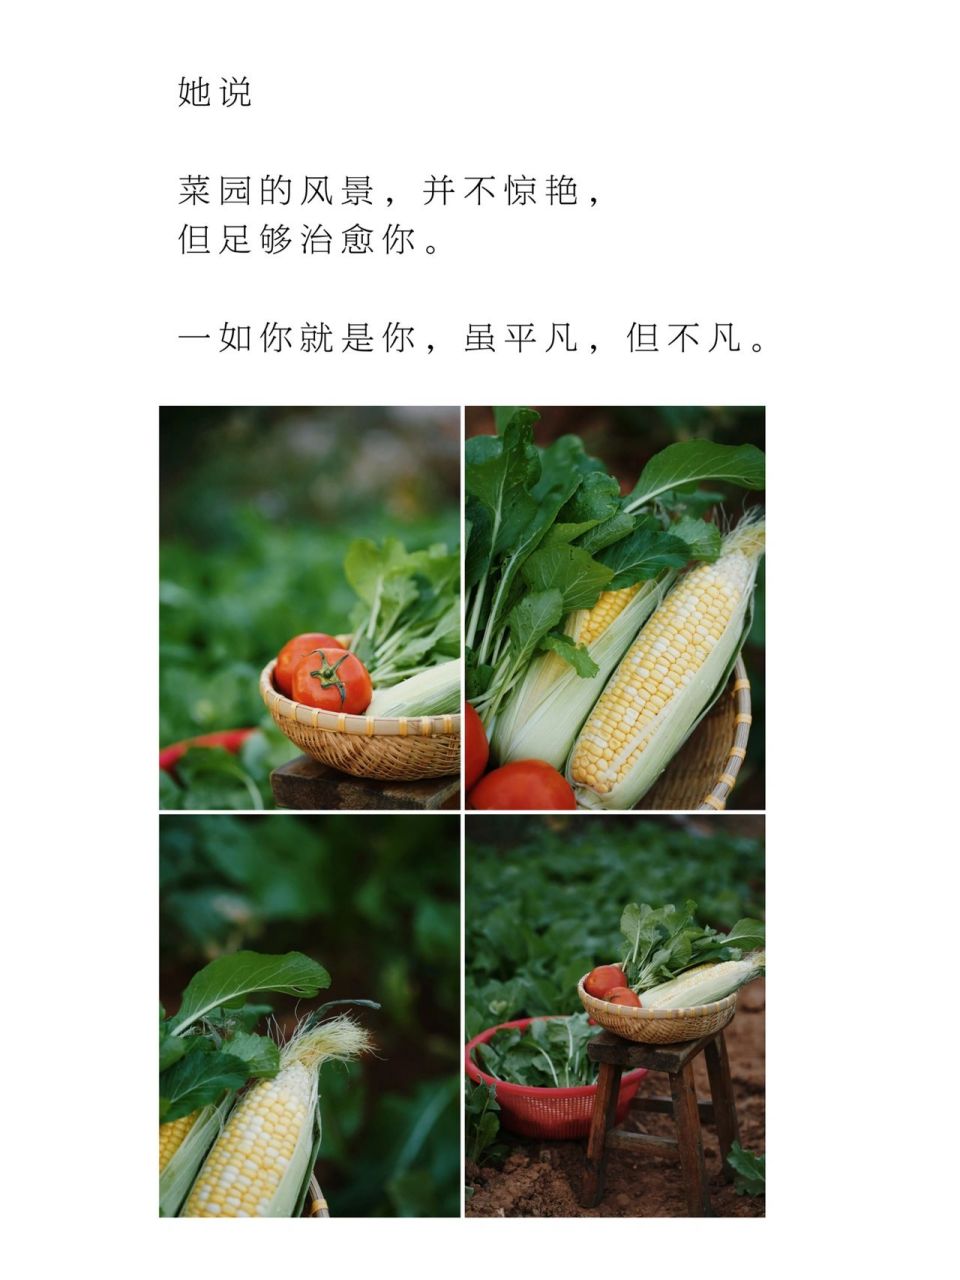 蔬菜创意文案图片